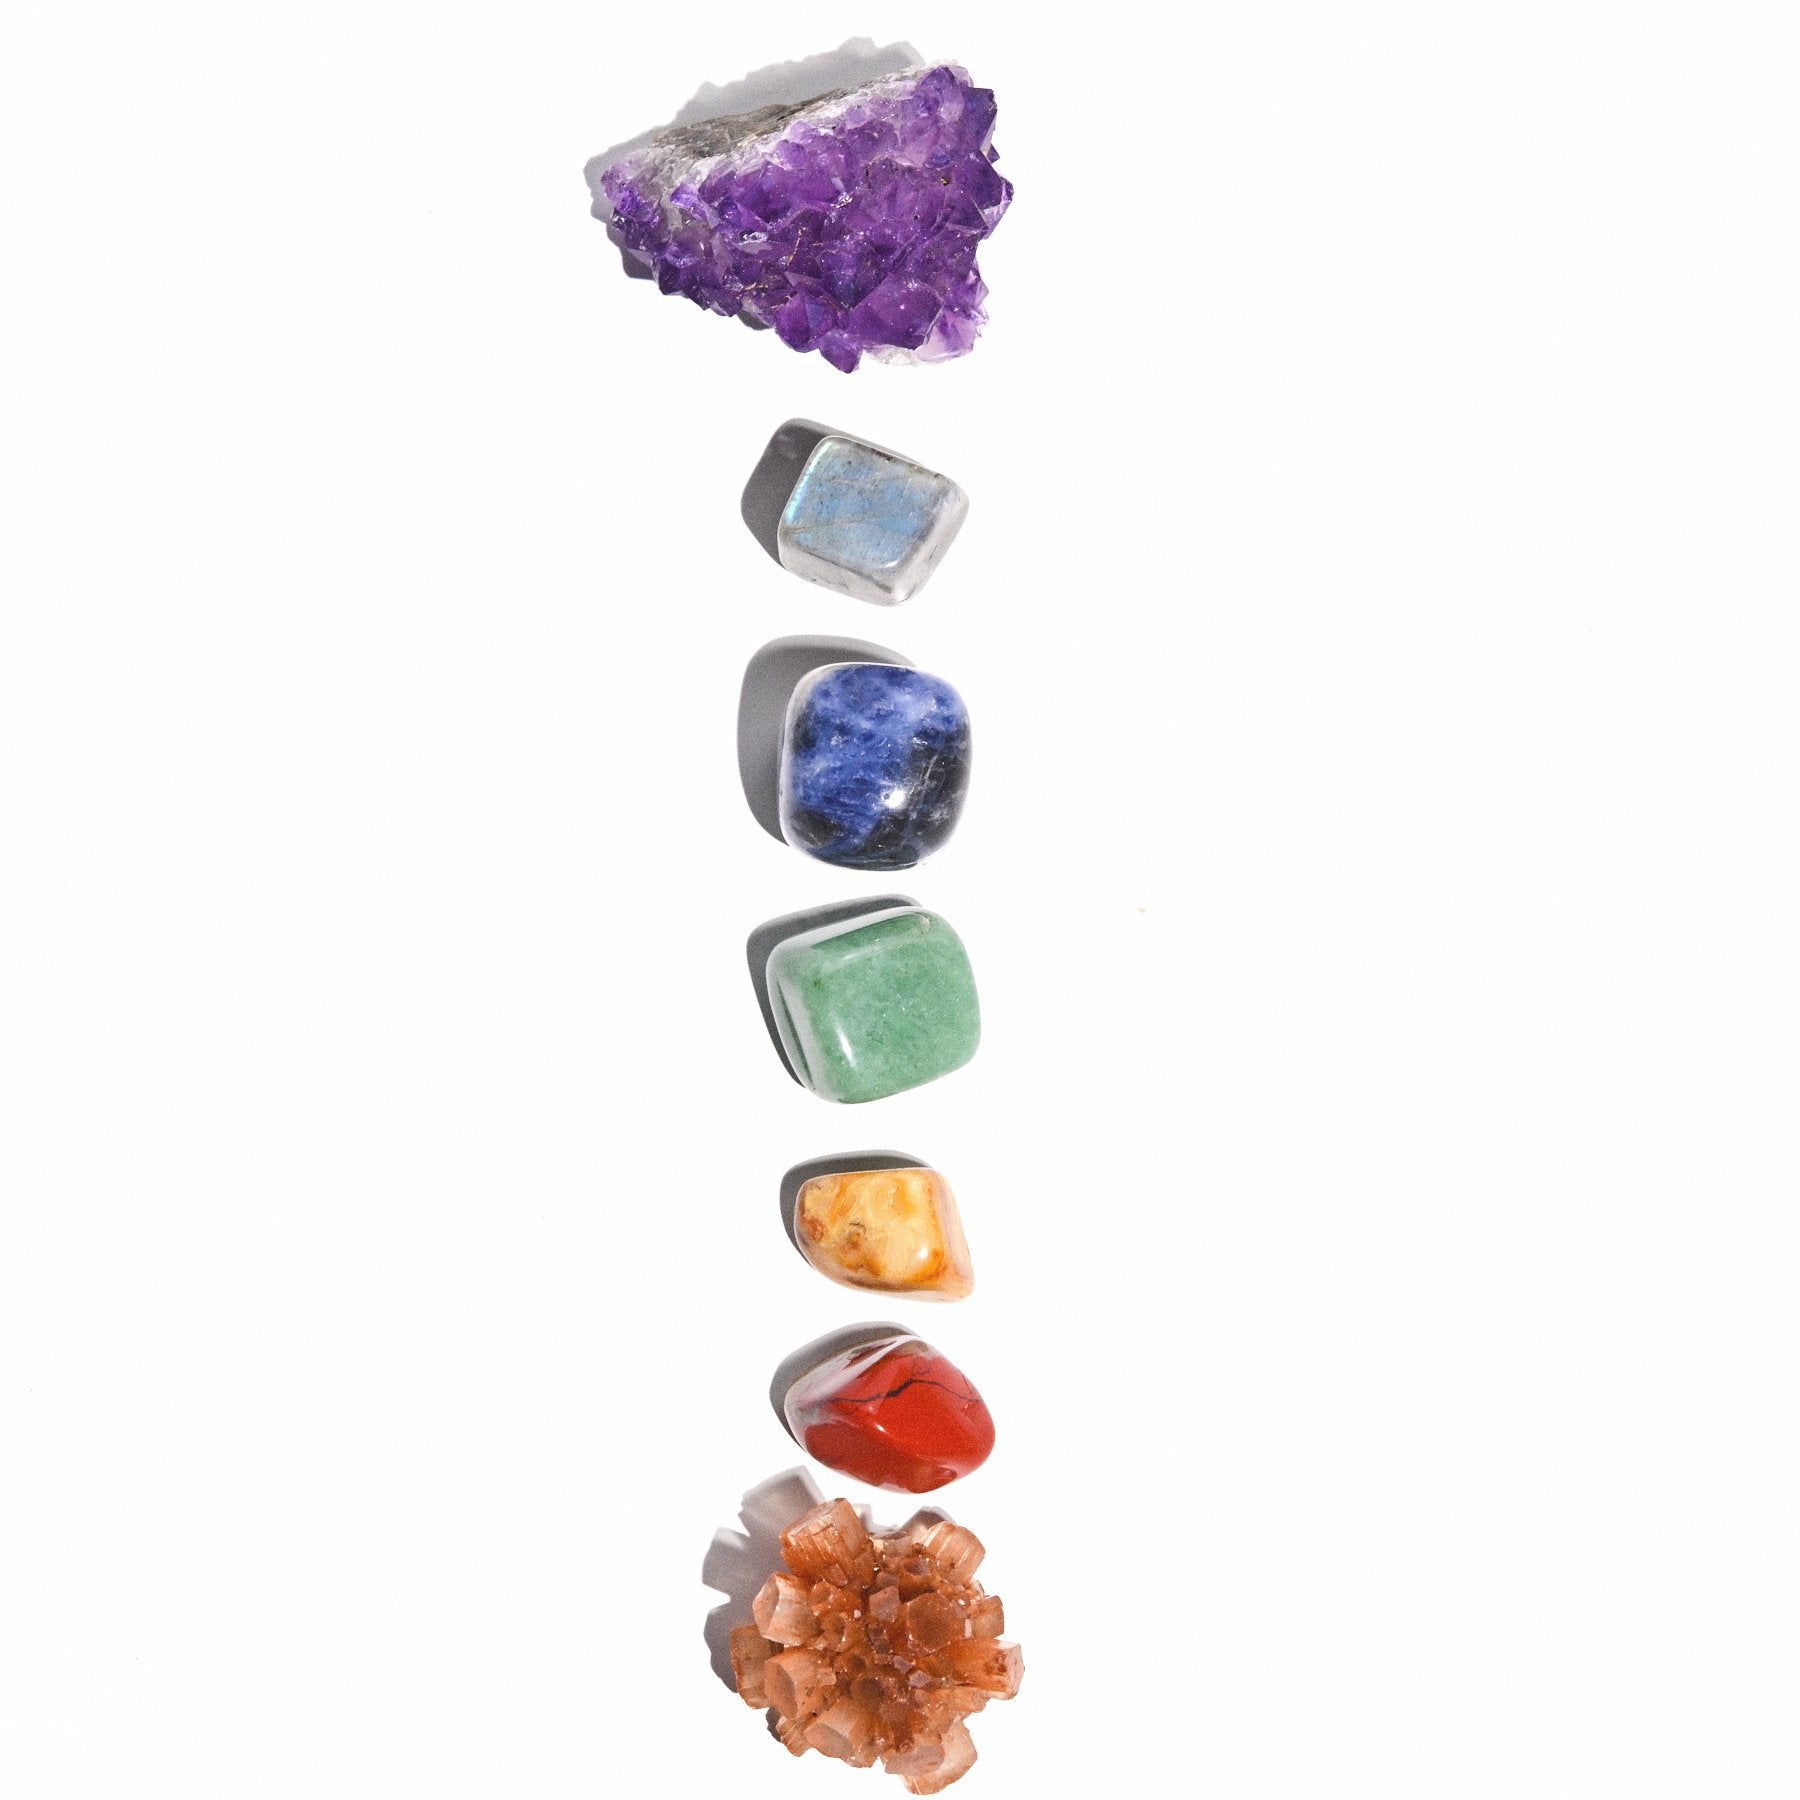 crystals to balance chakras